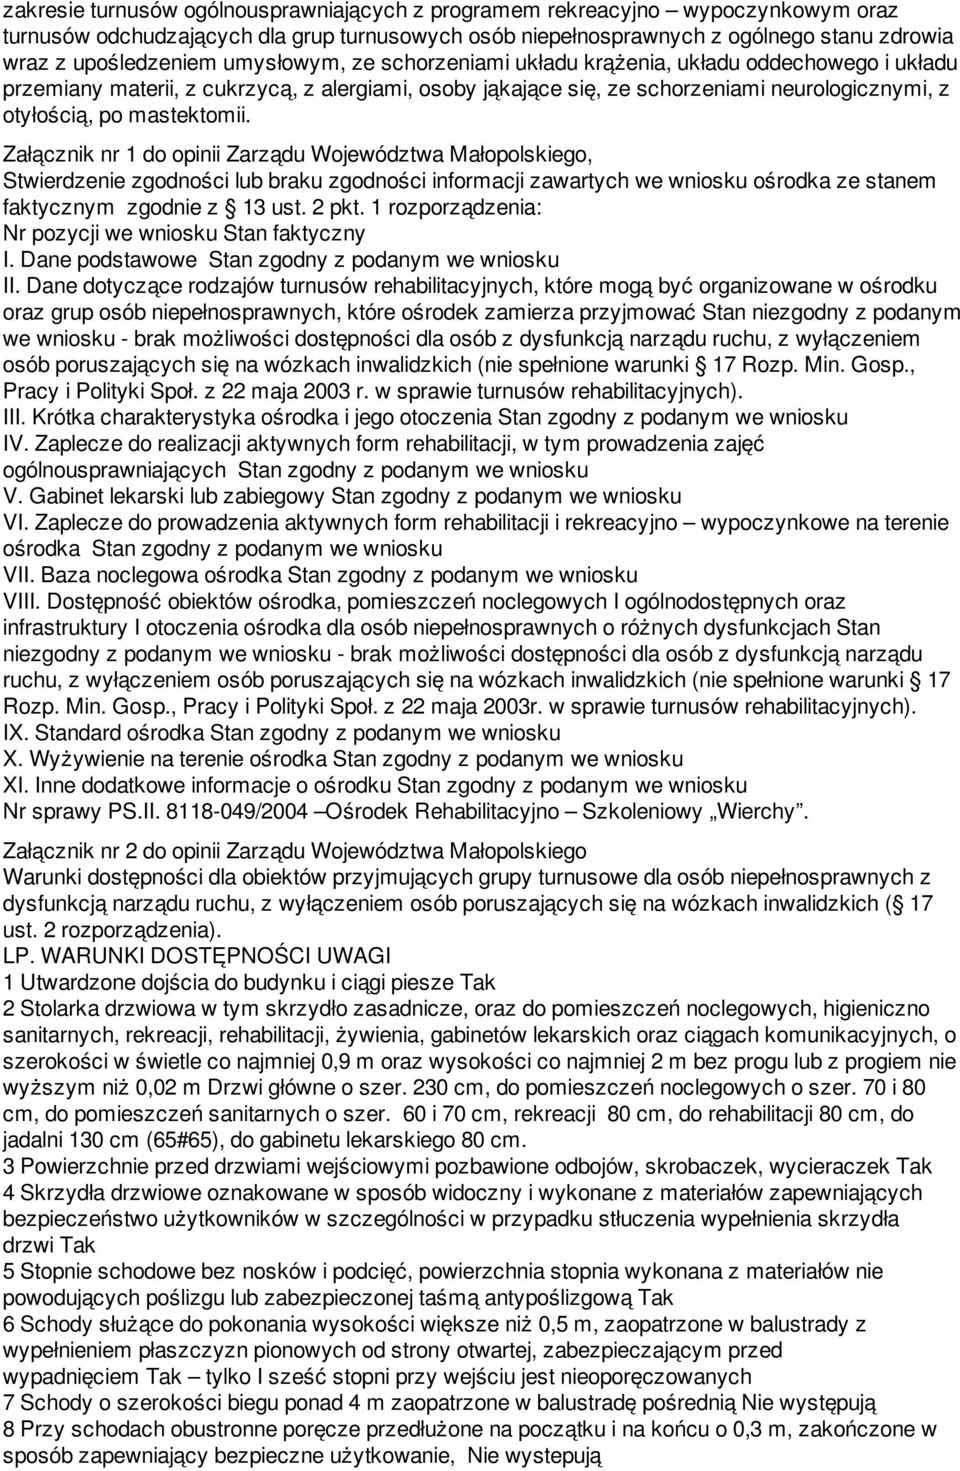 Załącznik nr 1 do opinii Zarządu Województwa Małopolskiego, Stwierdzenie zgodności lub braku zgodności informacji zawartych we wniosku ośrodka ze stanem faktycznym zgodnie z 13 ust. 2 pkt.